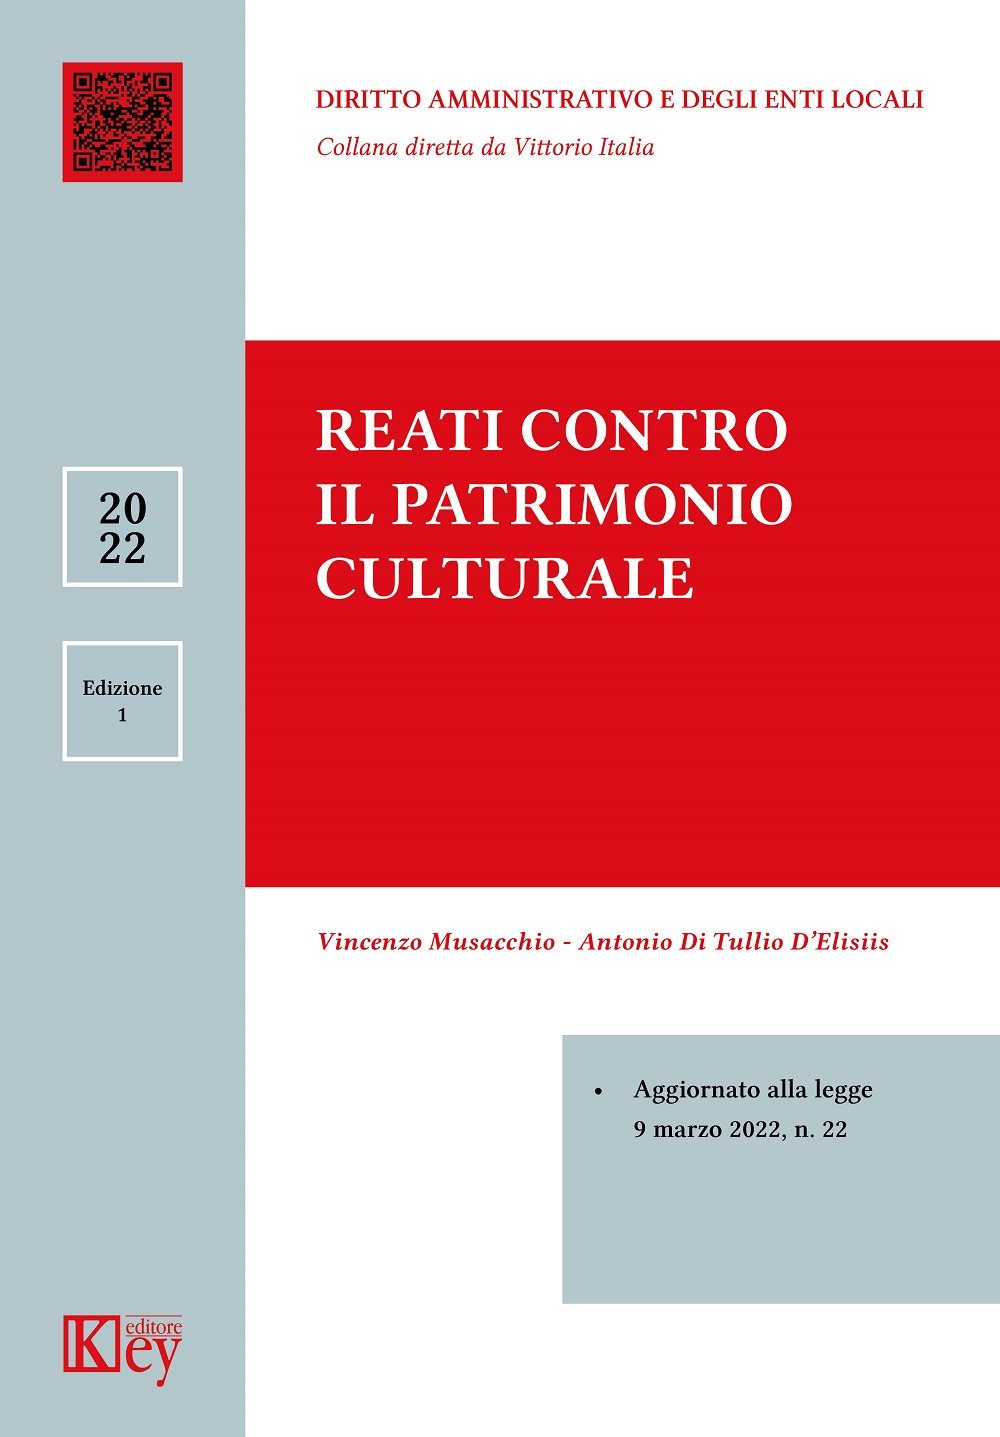 Libri Vincenzo Musacchio / Di Tullio D'Elisiis Antonio - Reati Contro Il Patrimonio Culturale NUOVO SIGILLATO, EDIZIONE DEL 03/06/2022 SUBITO DISPONIBILE